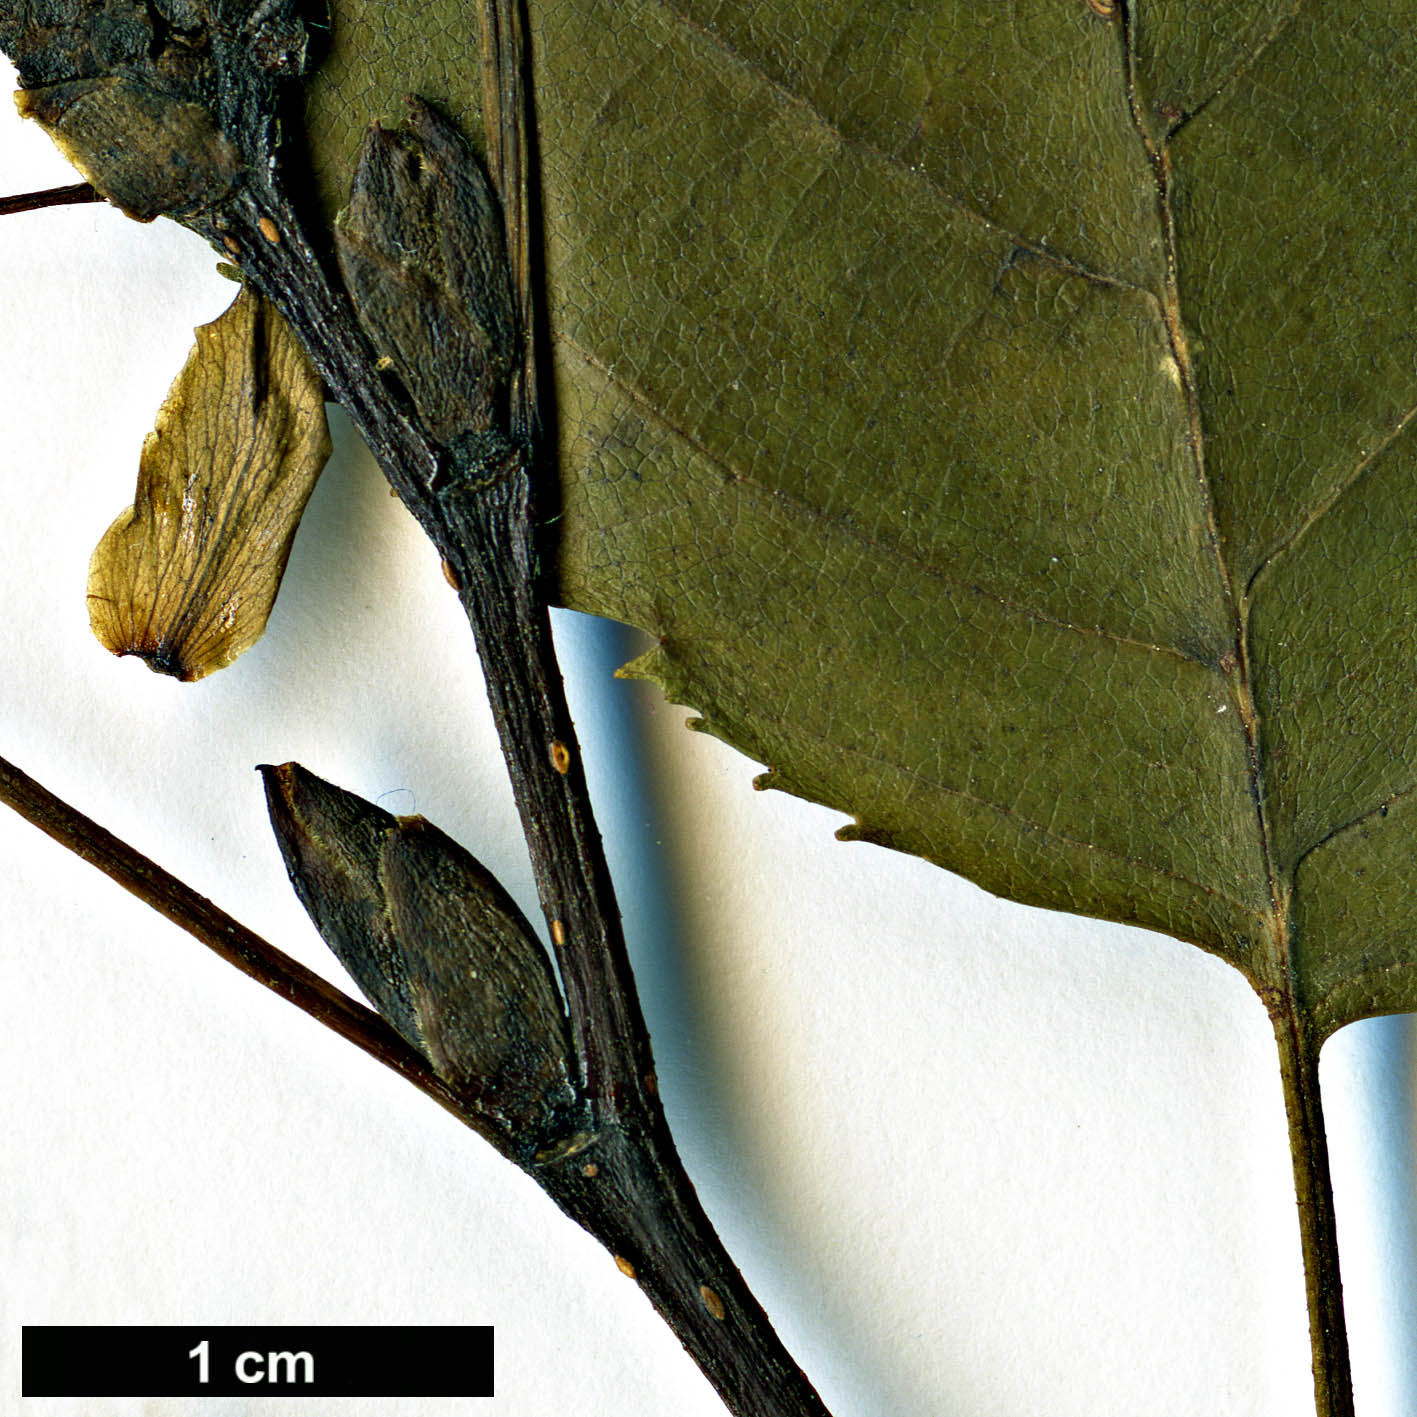 High resolution image: Family: Betulaceae - Genus: Alnus - Taxon: alnobetula - SpeciesSub: subsp. sinuata